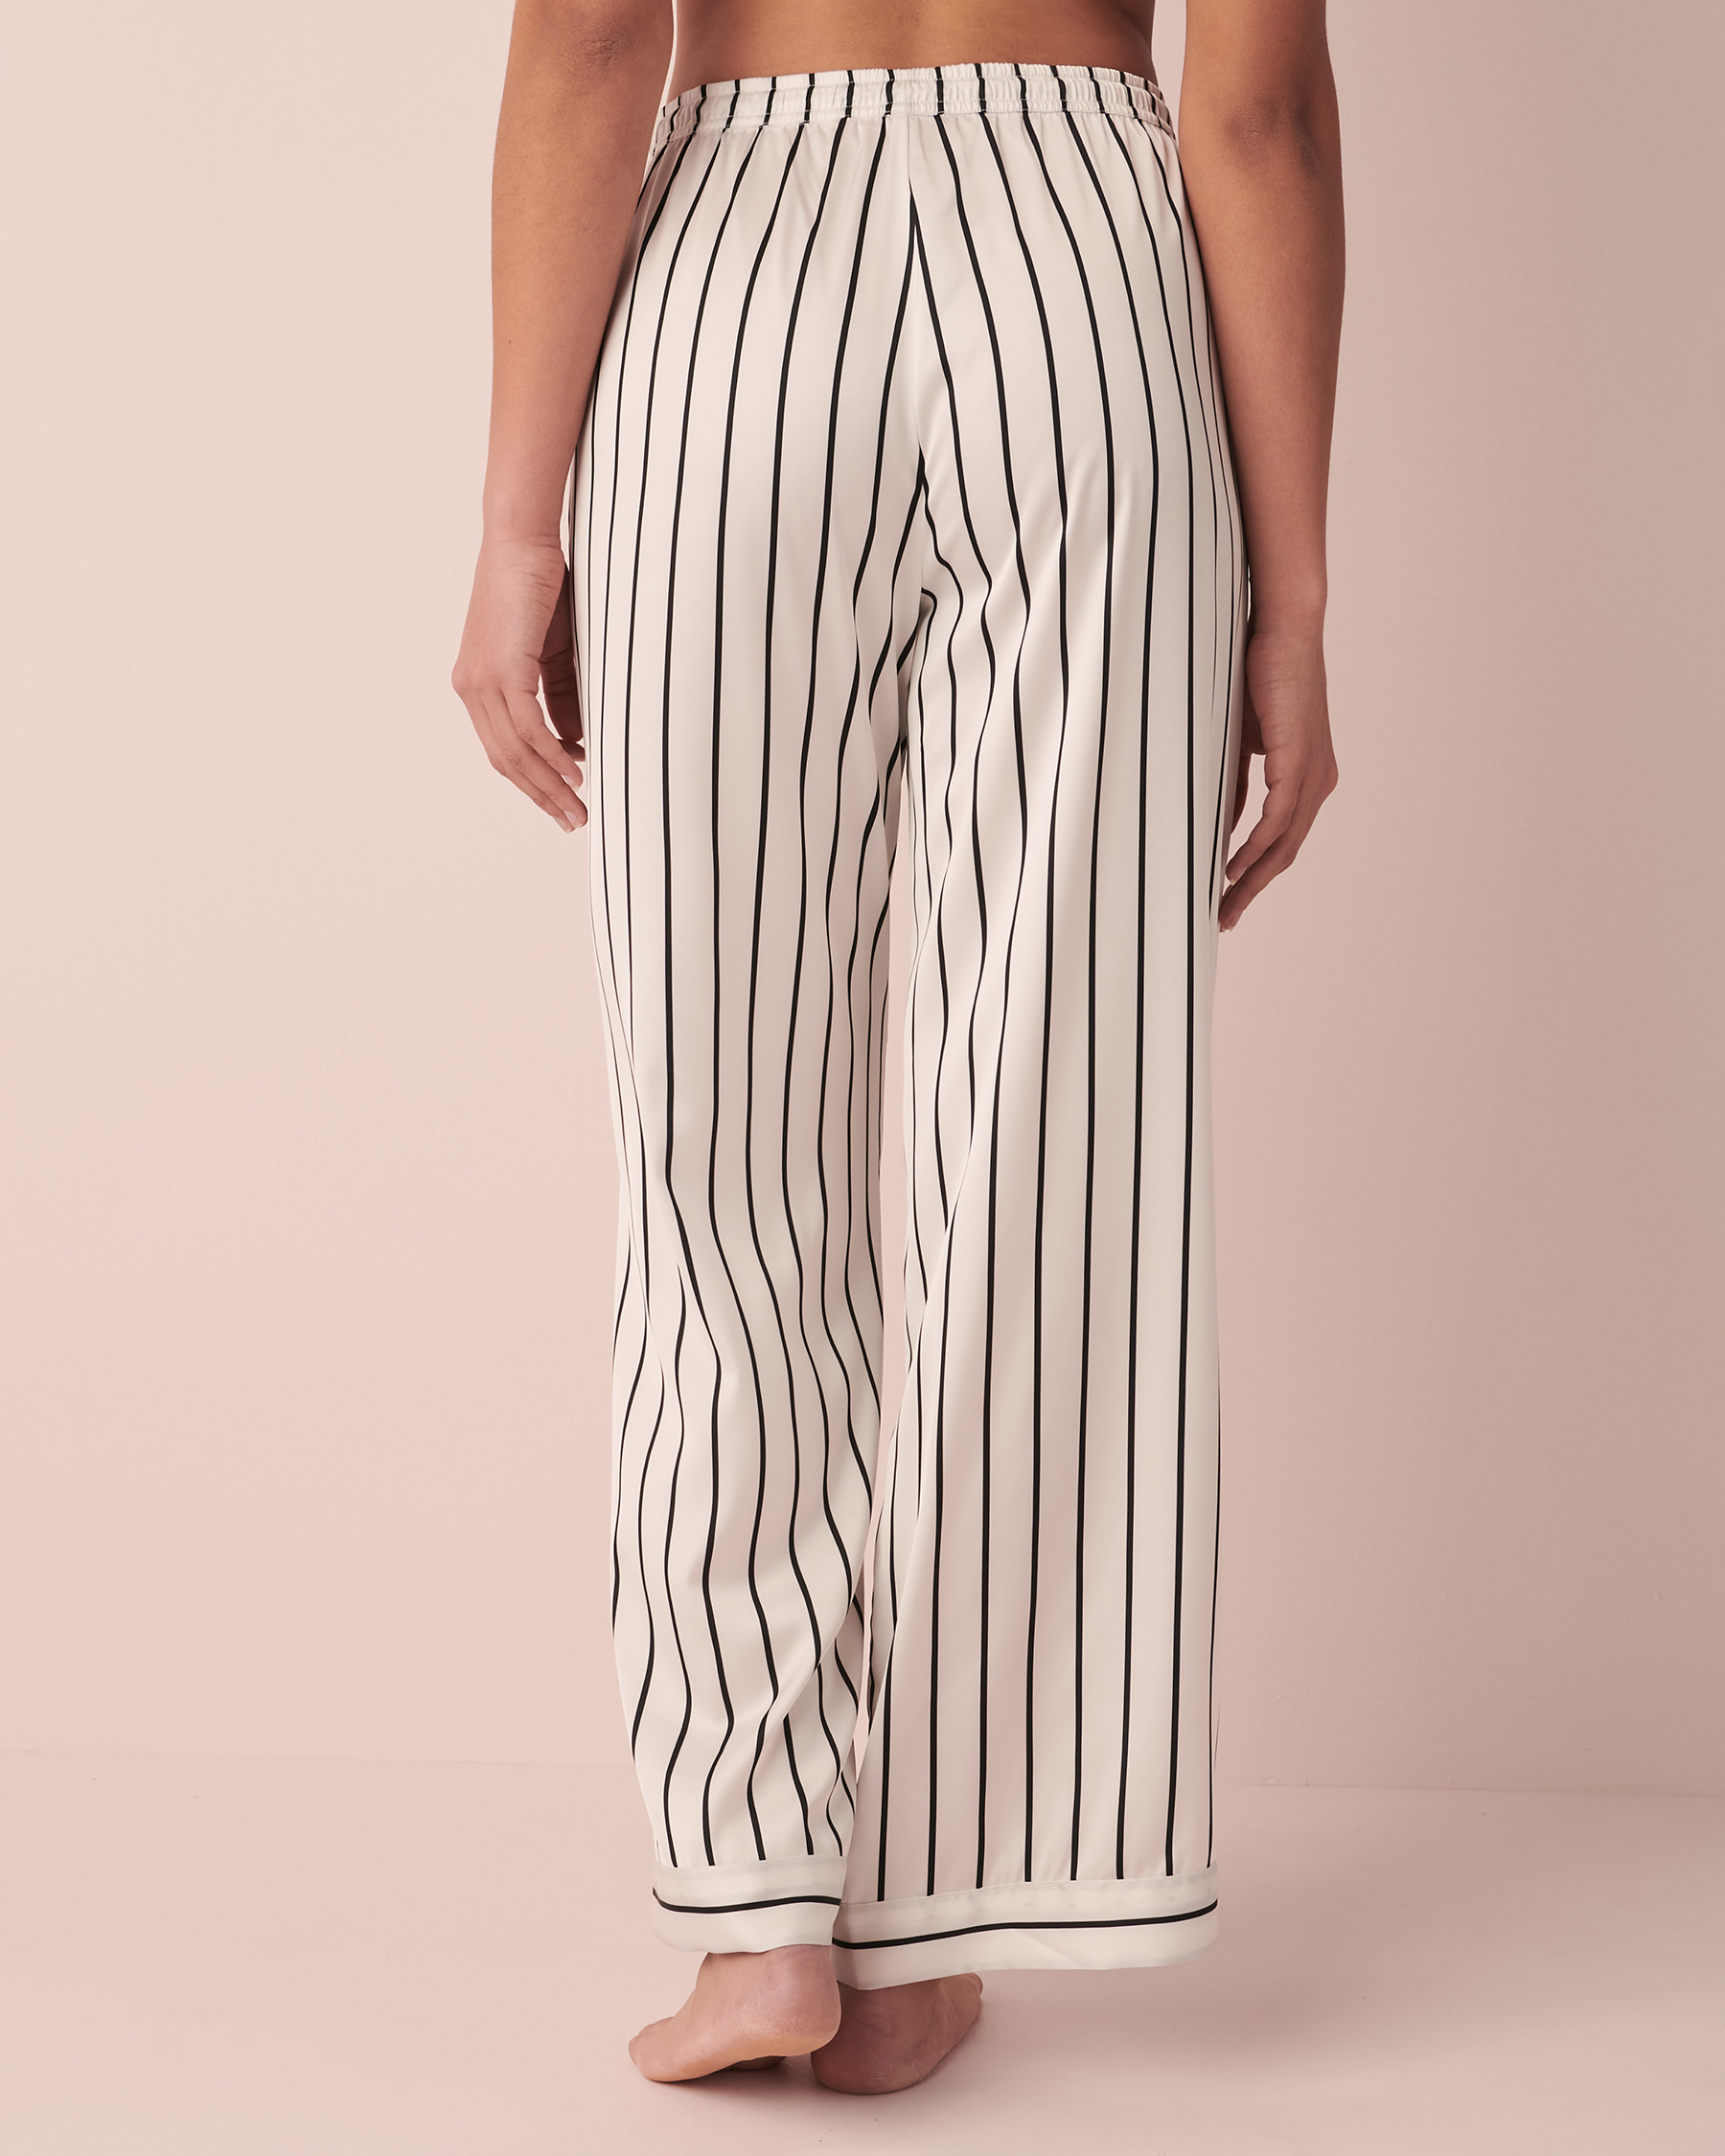 LA VIE EN ROSE Striped Satin Pants Black and white stripe 60200058 - View4